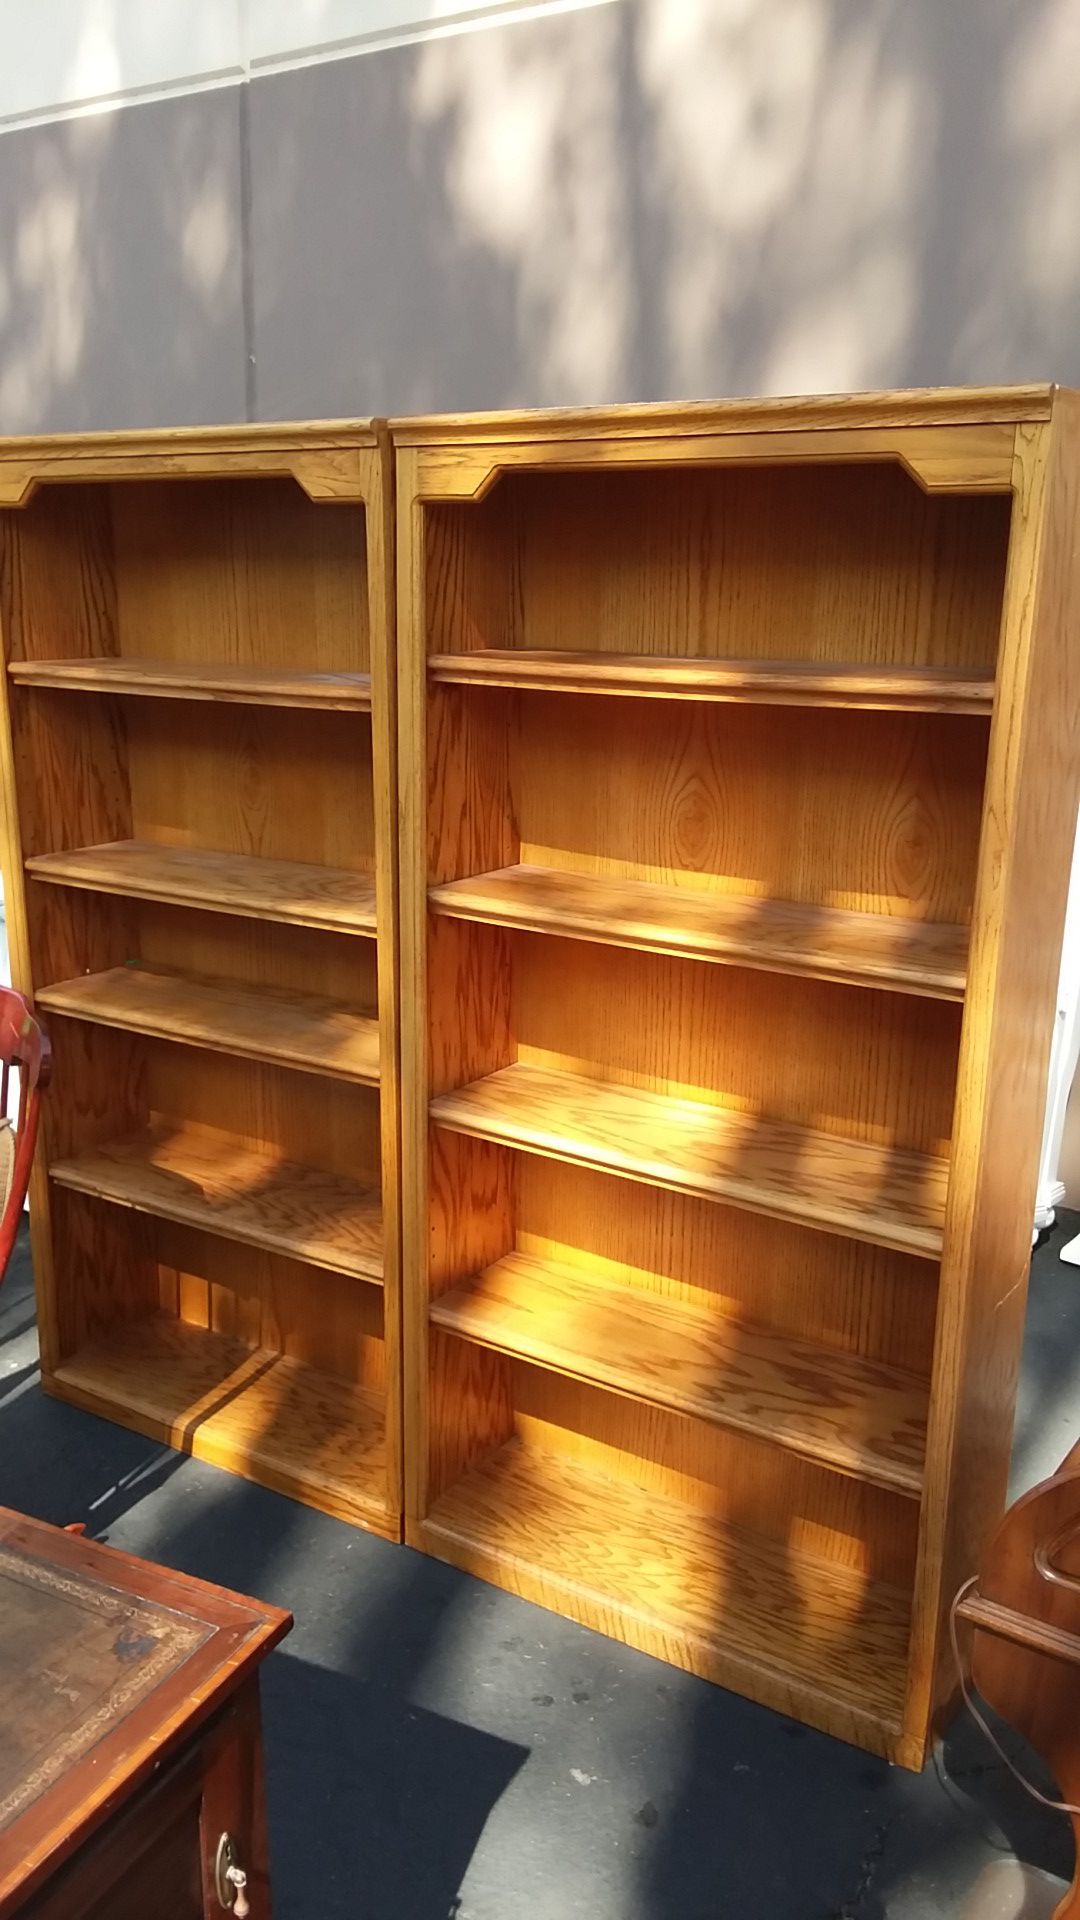 2 solid oak bookshelves adjustable